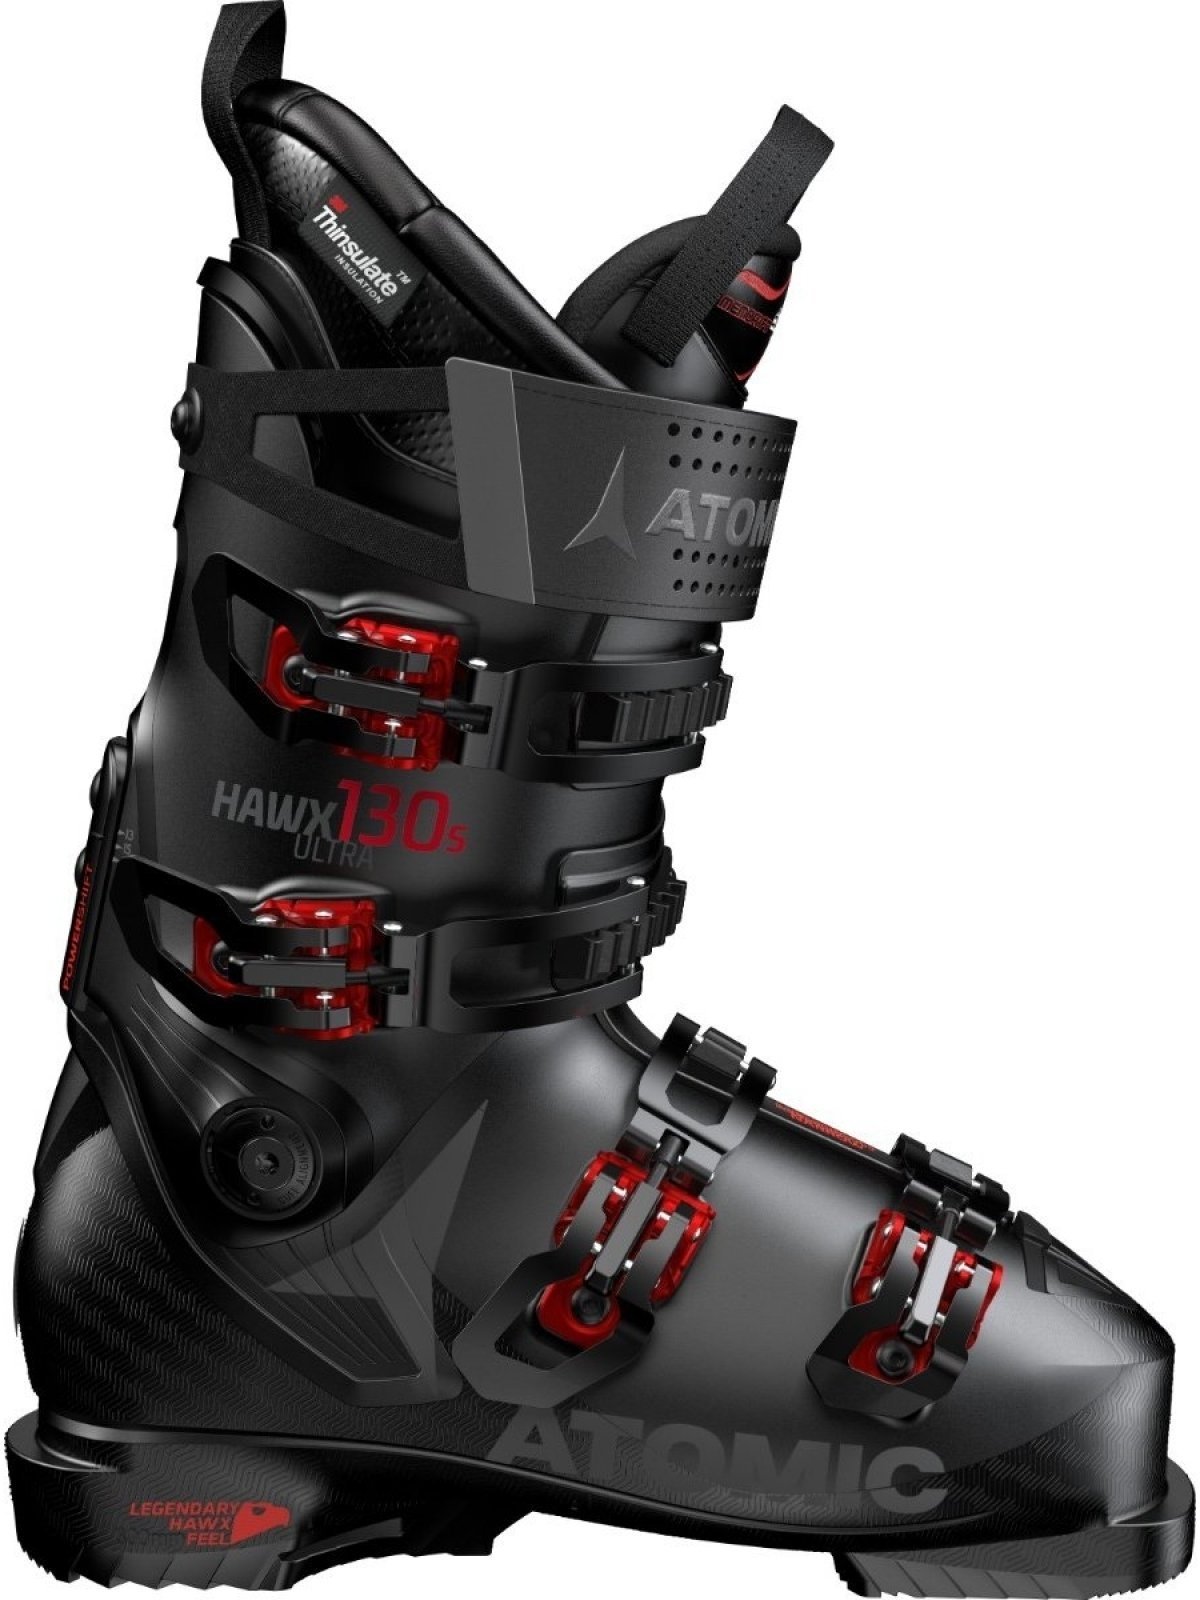 Μπότες Σκι Alpine Atomic Hawx Ultra Μαύρο-Κόκκινο 29/29,5 Μπότες Σκι Alpine